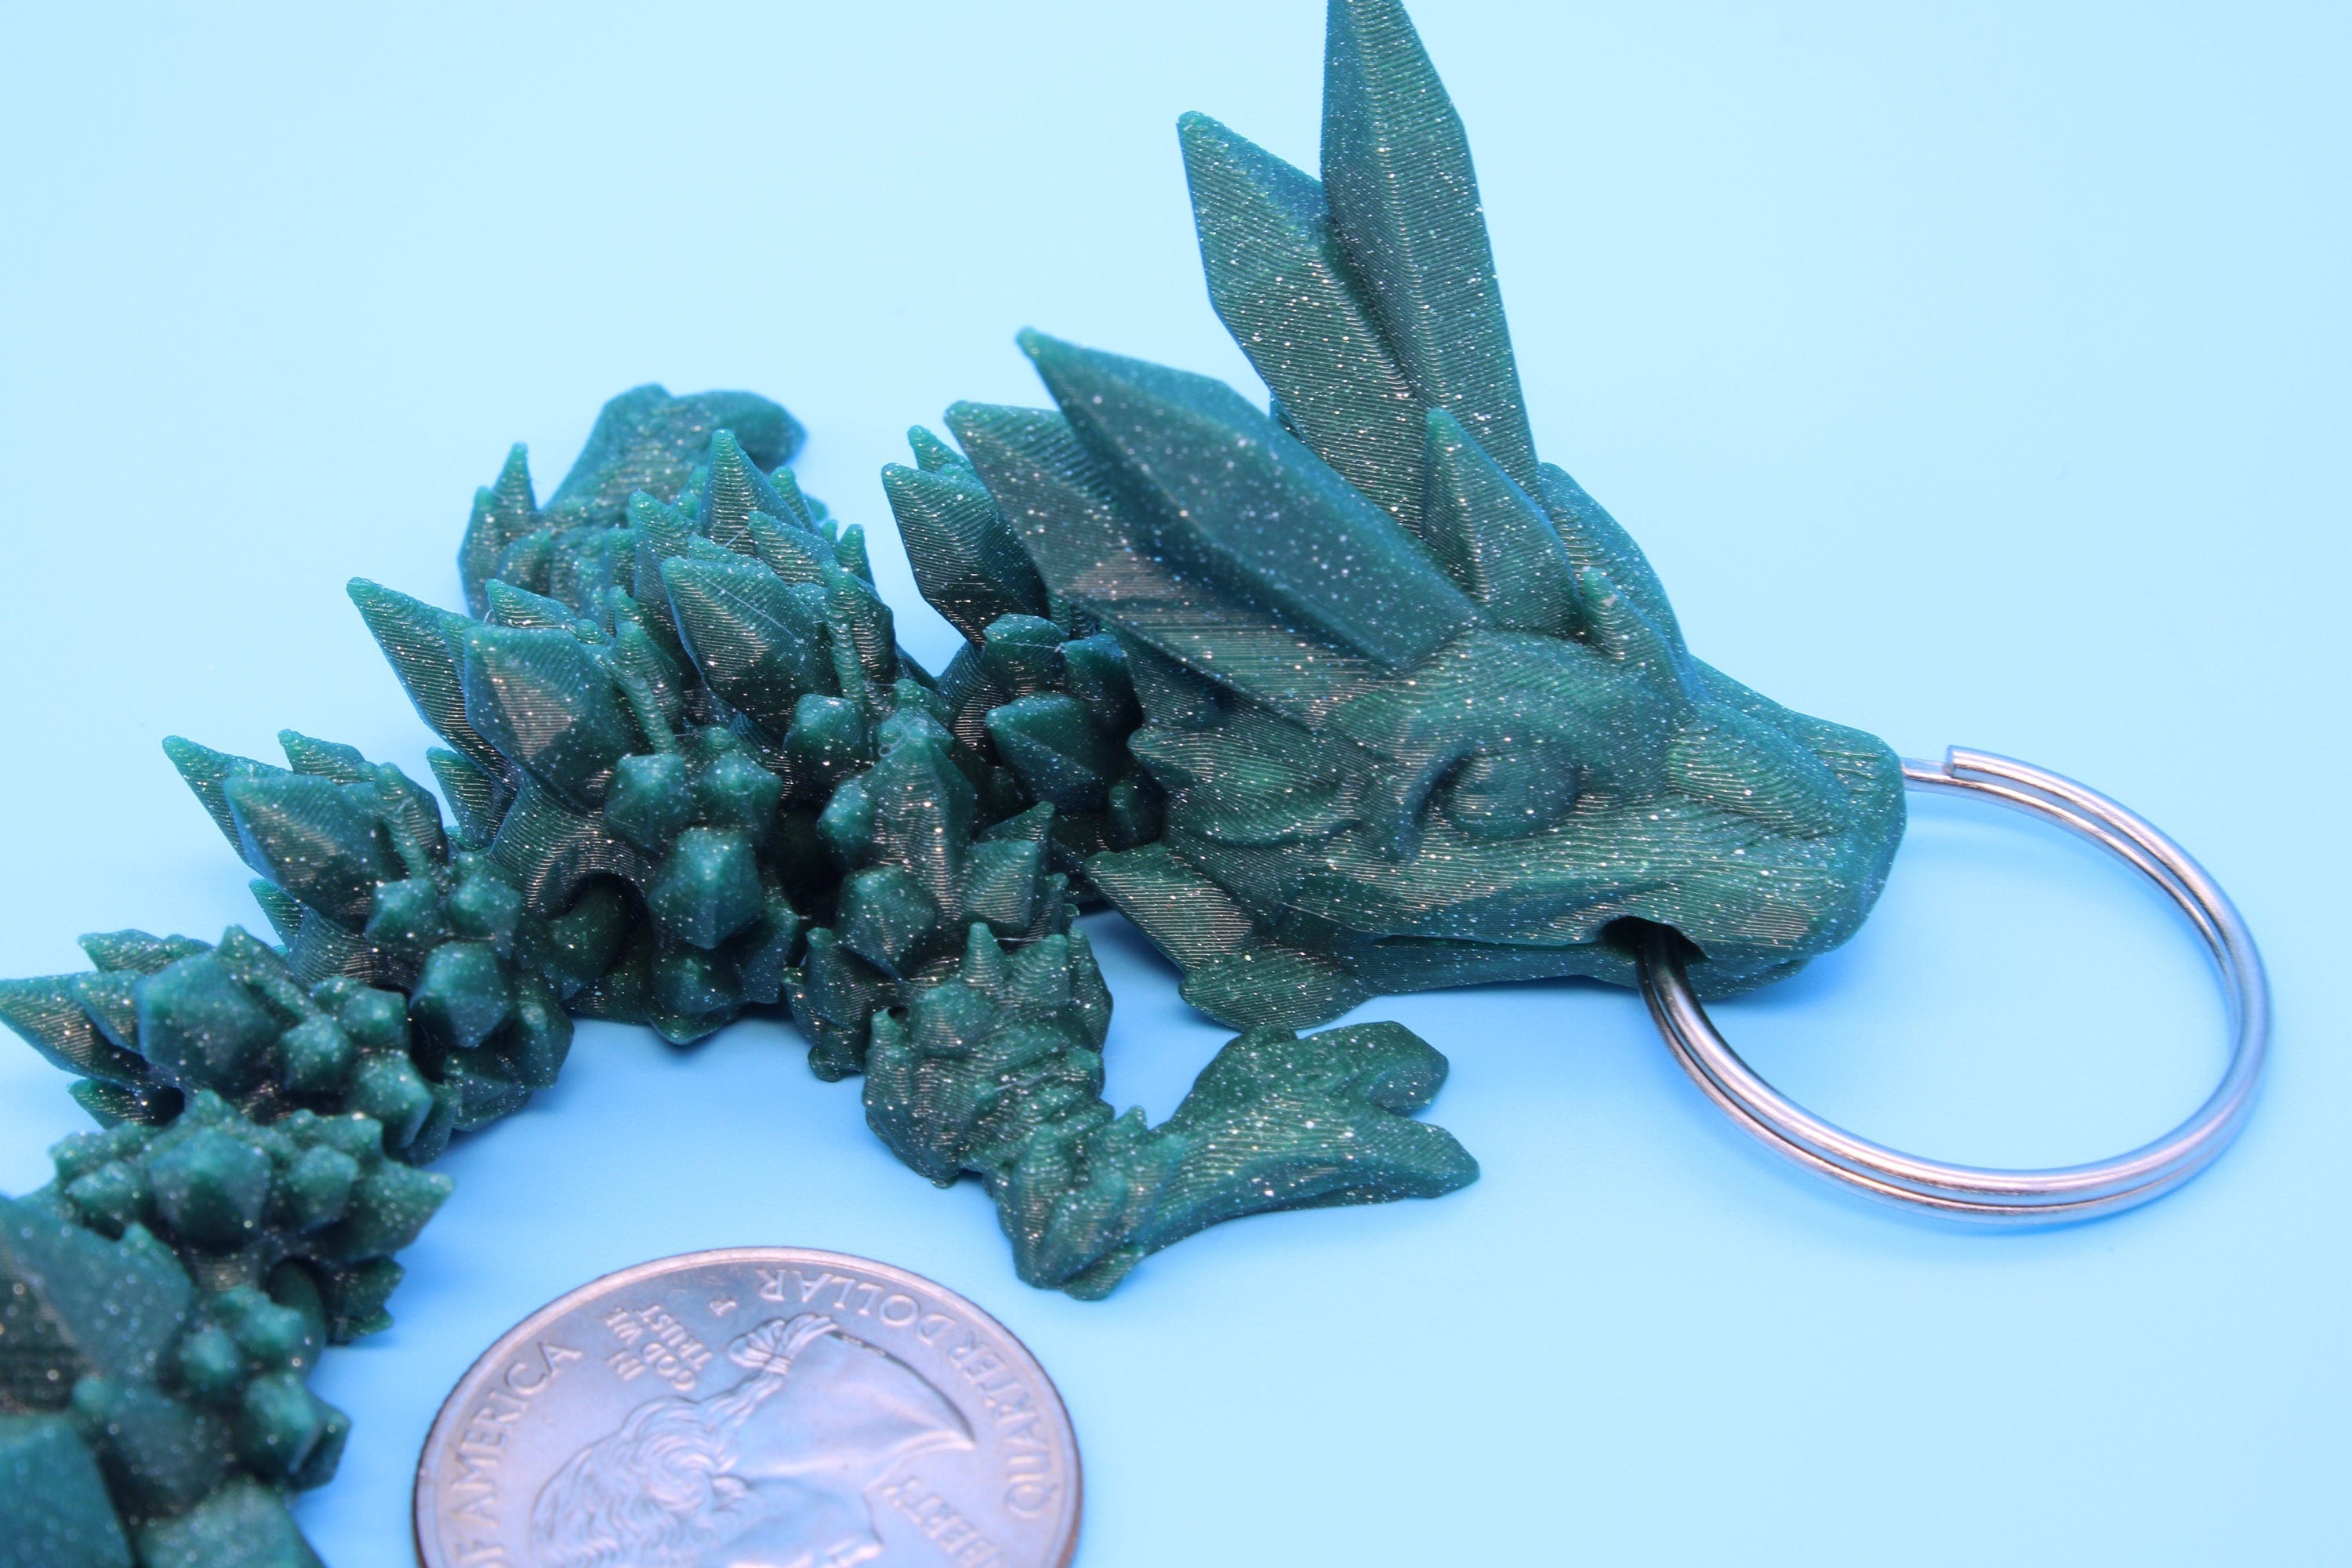 Green Baby Crystal Dragon Keychain | 3D Printed Crystal Dragon | 4.5 inches Dragon Friend | Sensory Toy | Fidget Toy | Flexi Dragon.